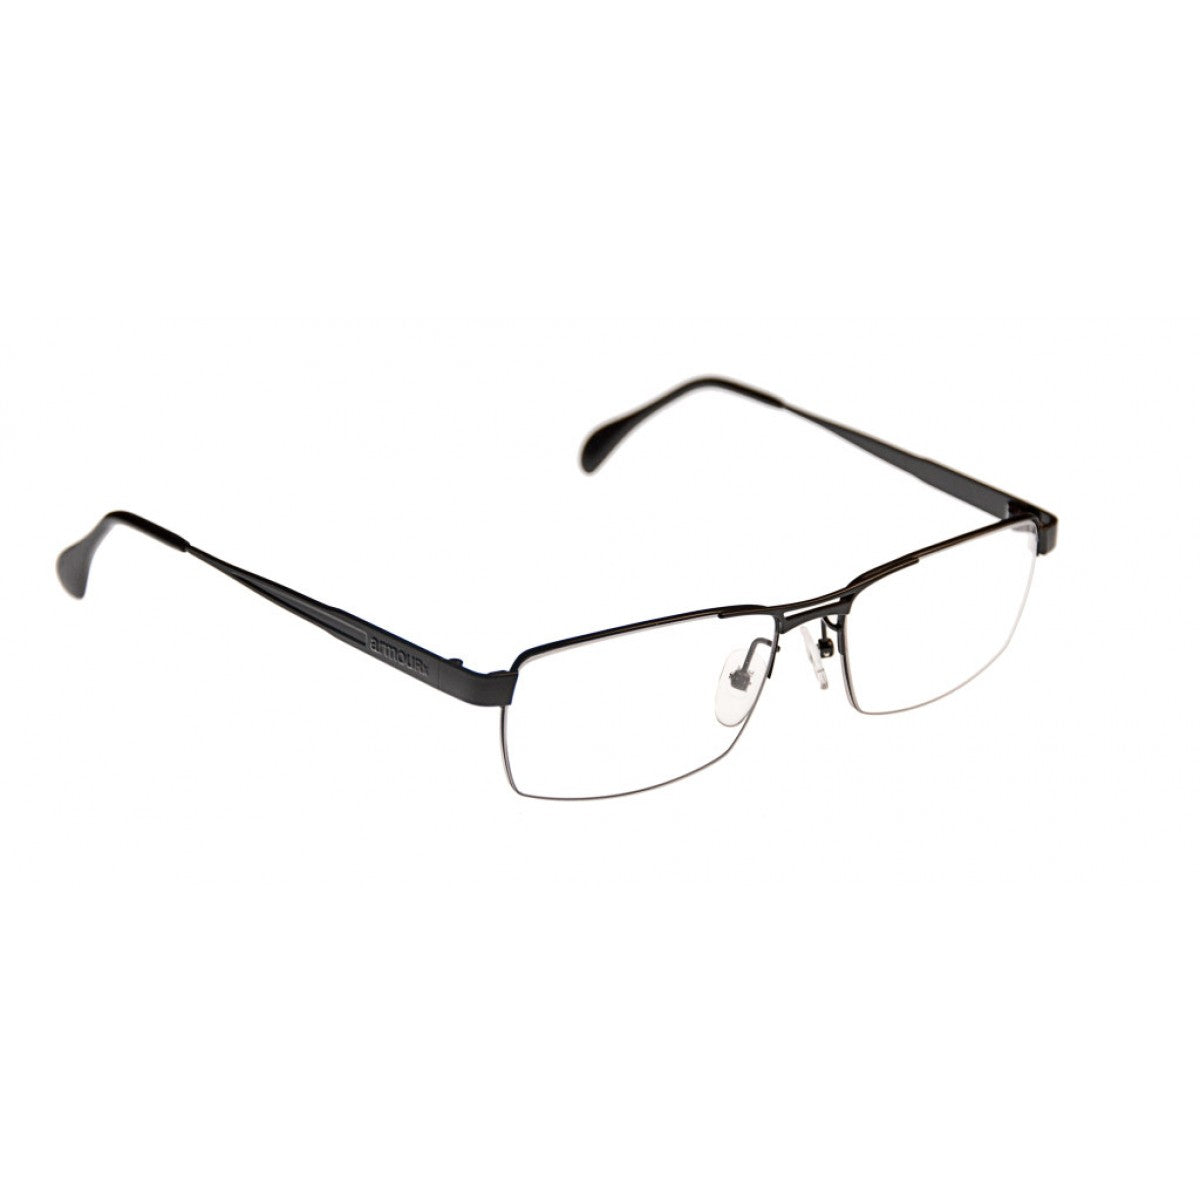 Armourx Safety Classic Eyeglasses 7404 - Go-Readers.com